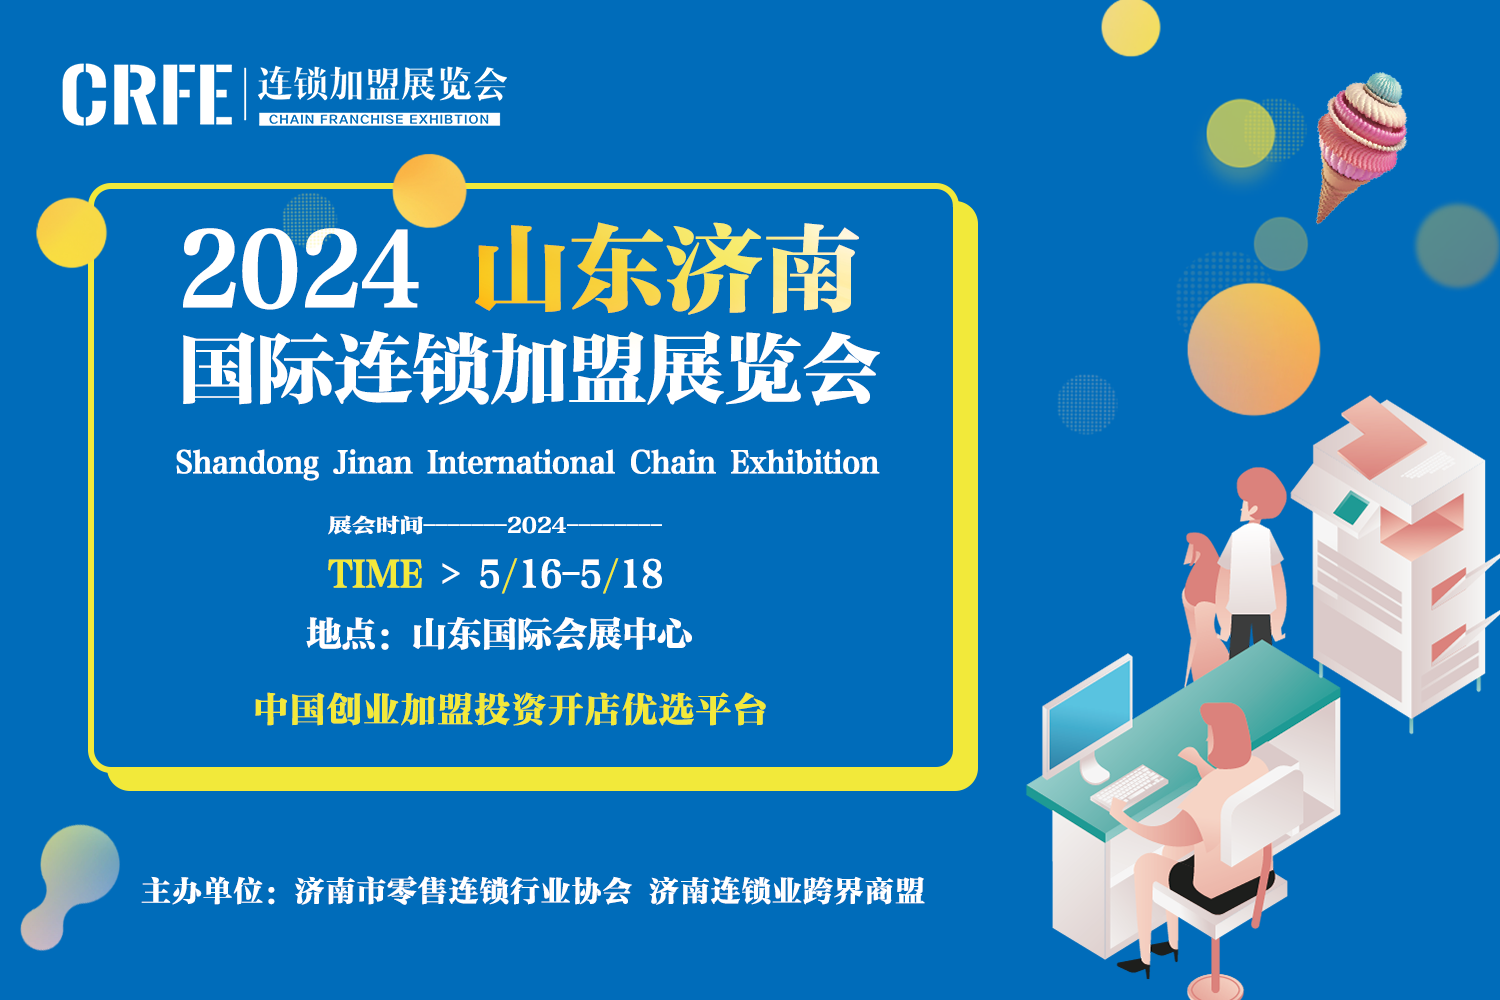 2024CRFE山东国际连锁加盟展览会助力品牌拓展市场